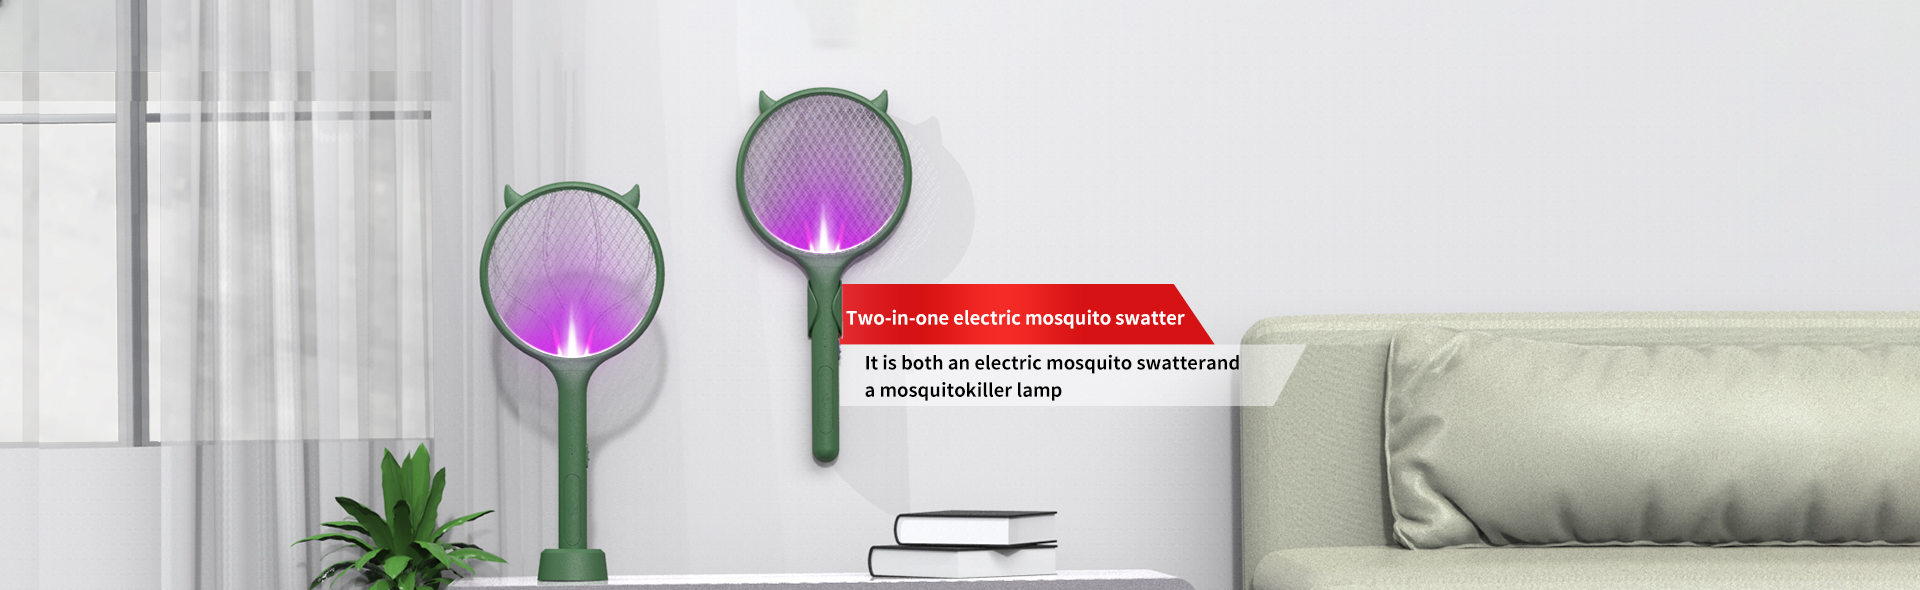 2090-紫光自动灭蚊